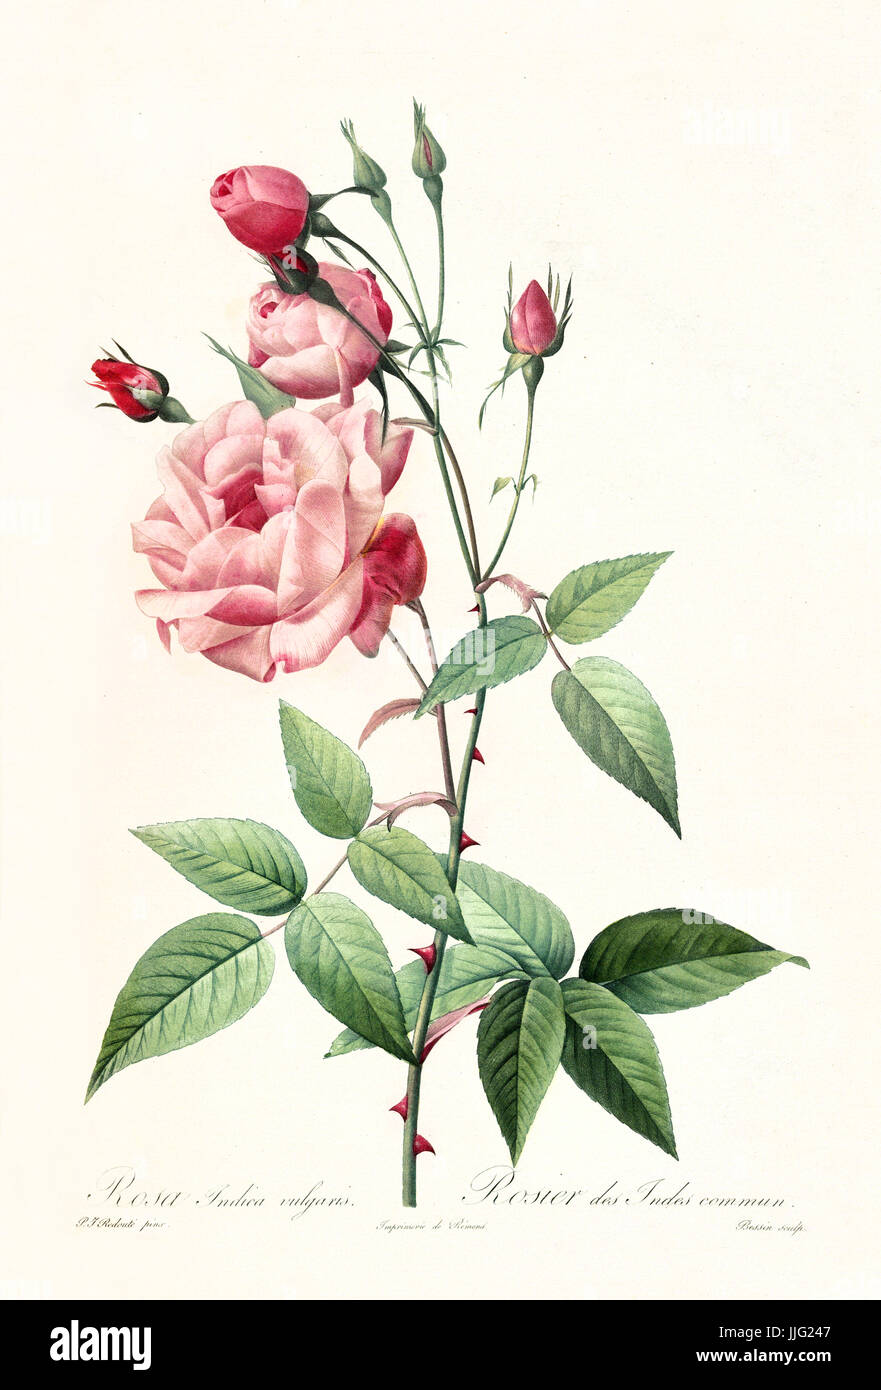 Vecchia illustrazione di rosa indica vulgaris. Creato da P. R. Redoute, pubblicato su Les Roses, Imp. Firmin Didot, Parigi, 1817-24 Foto Stock